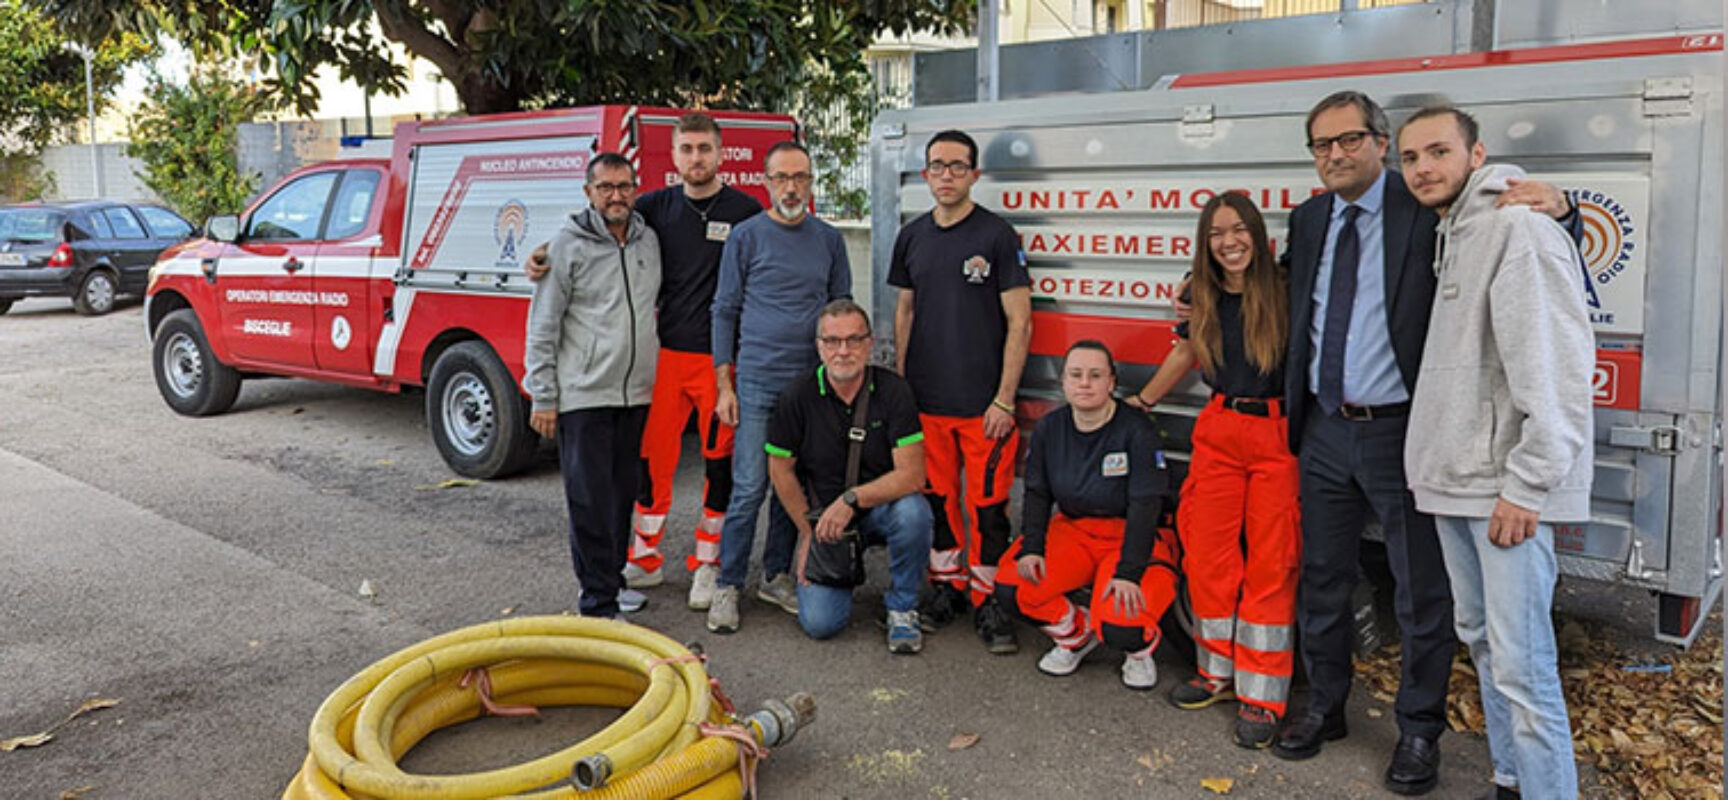 Oer Bisceglie in Toscana per aiutare le popolazioni colpite dall’alluvione